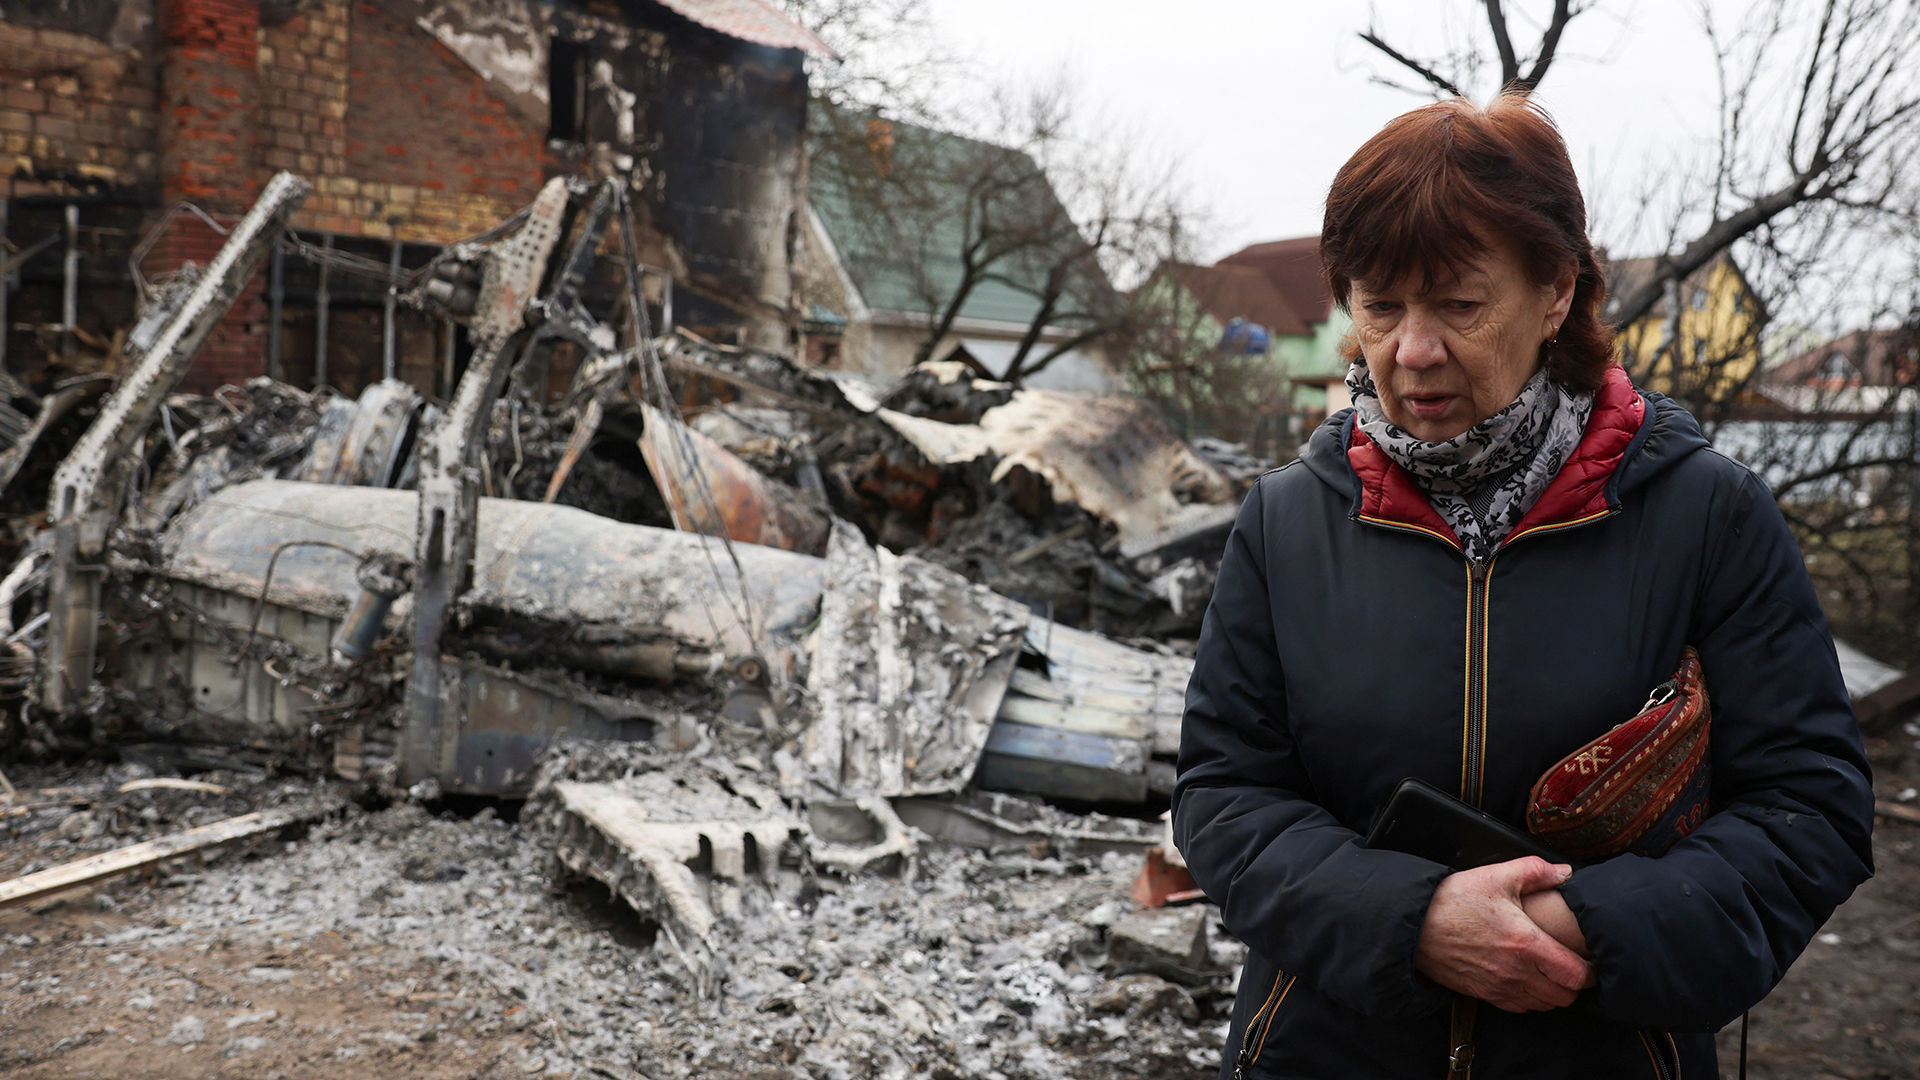 Eine Frau geht um das Wrack eines nicht identifizierten Flugzeugs herum, das in einem Wohngebiet in Kiew in ein Haus stürzte. | Bildquelle: REUTERS